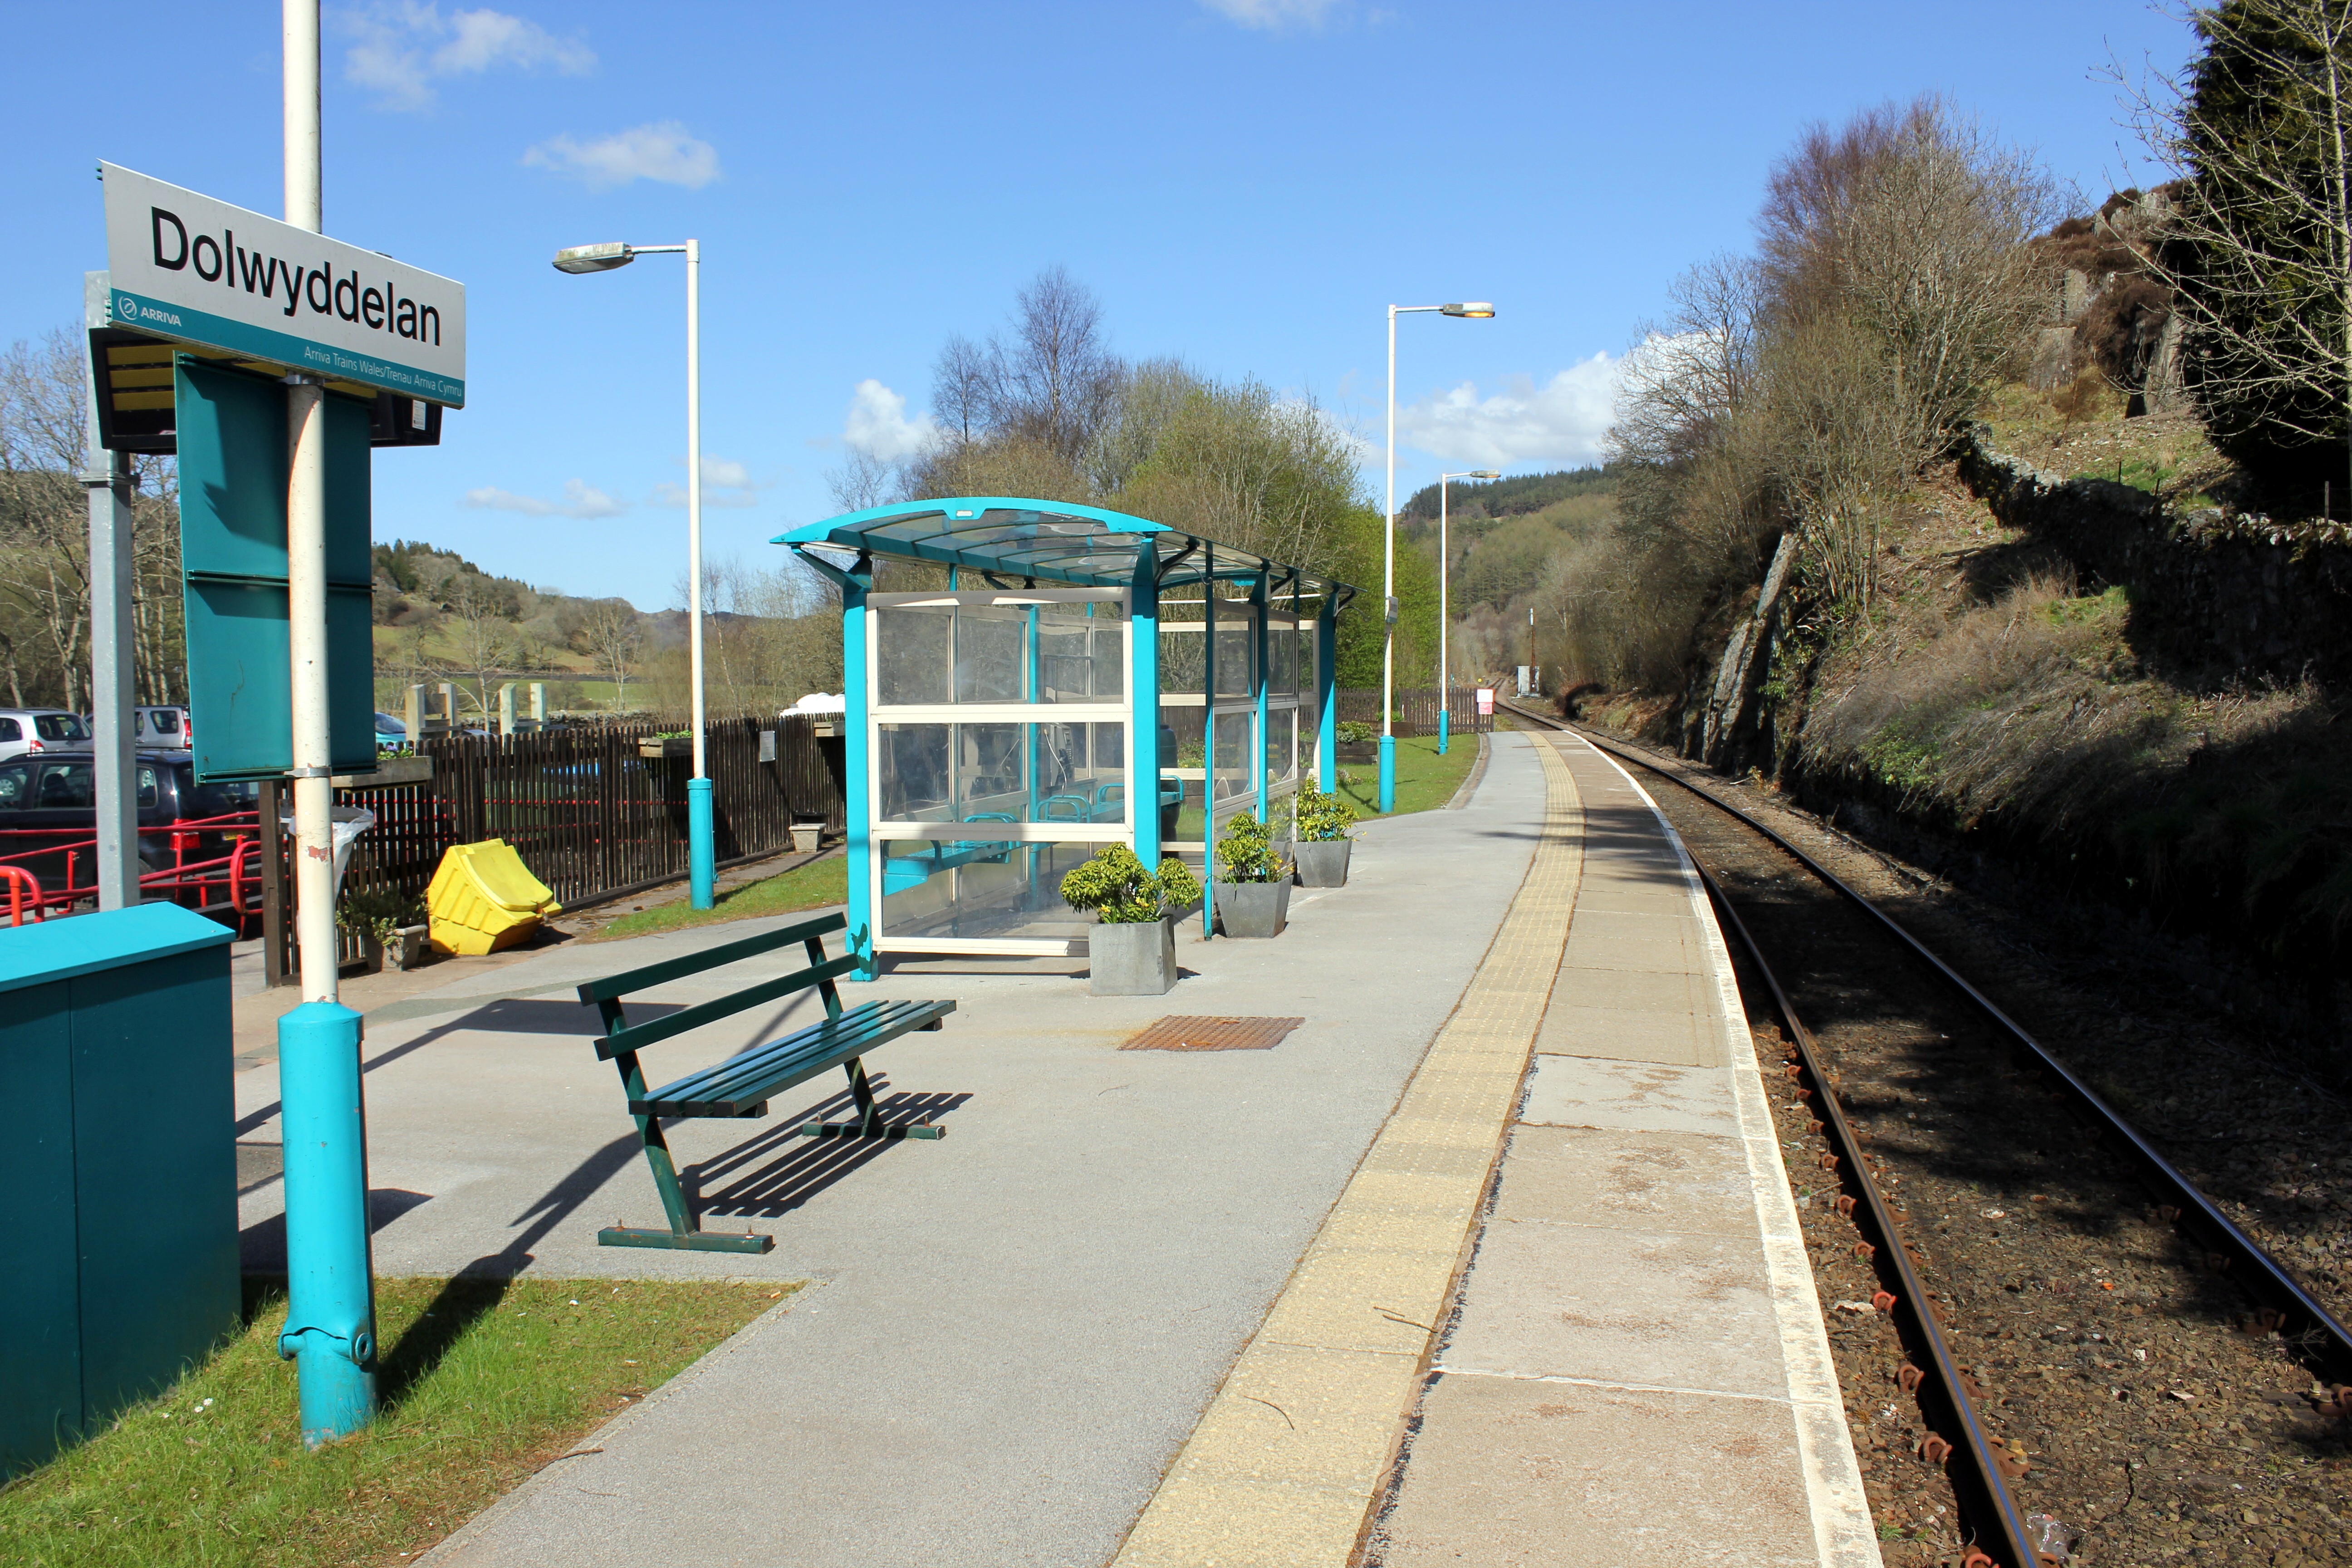 Dolwyddelan railway station